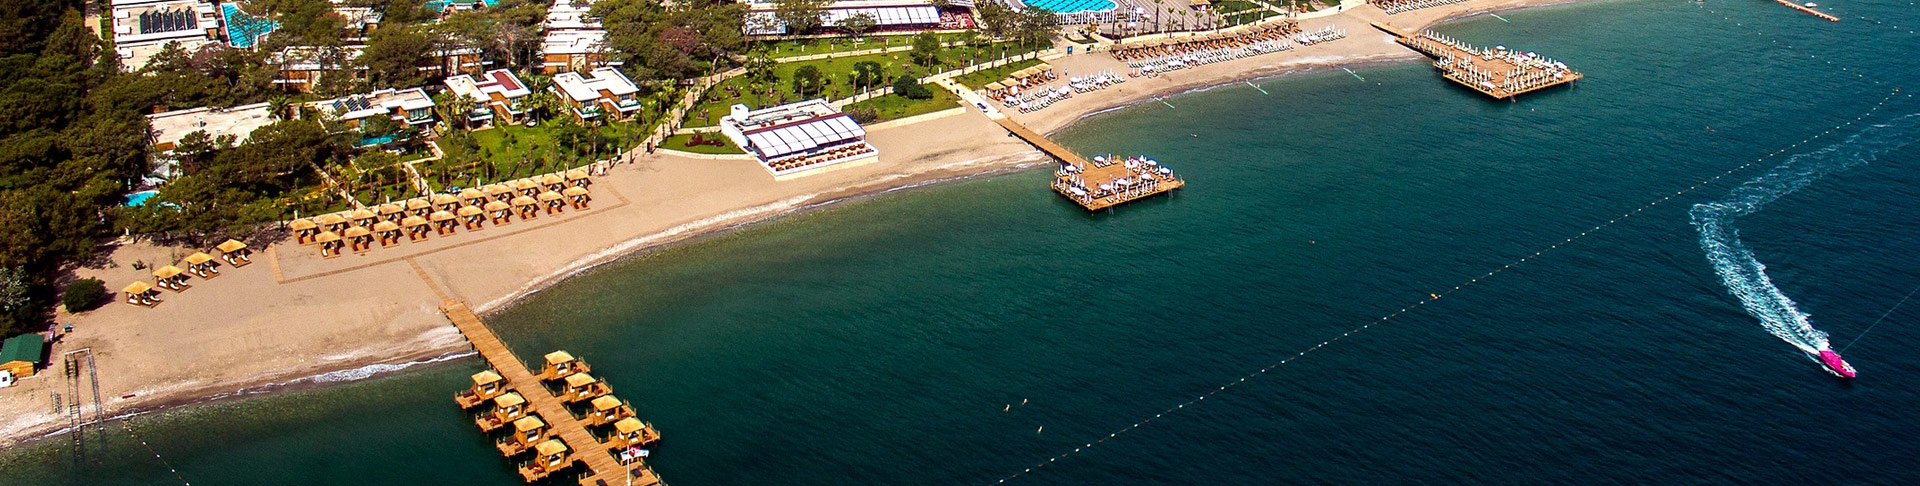 Beldibi luchthaven taxi transfer van-naar vakantie hotel vliegveld transfers Antalya Luchthaven vakantiereizen Turkije